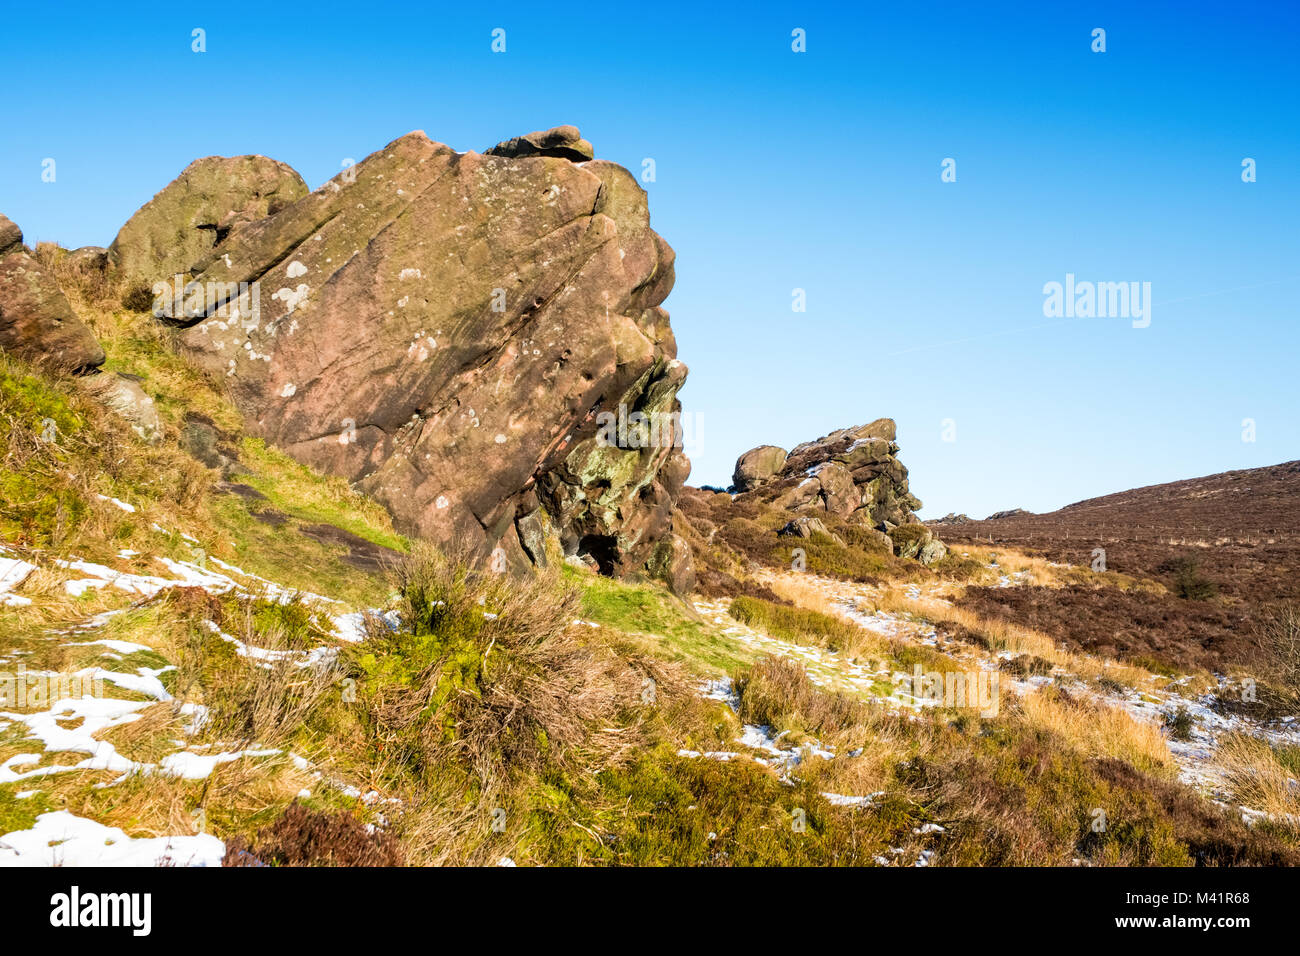 Newstones, un affioramento gritstone in Staffordshire Moorlands nel Parco Nazionale di Peak District, REGNO UNITO Foto Stock